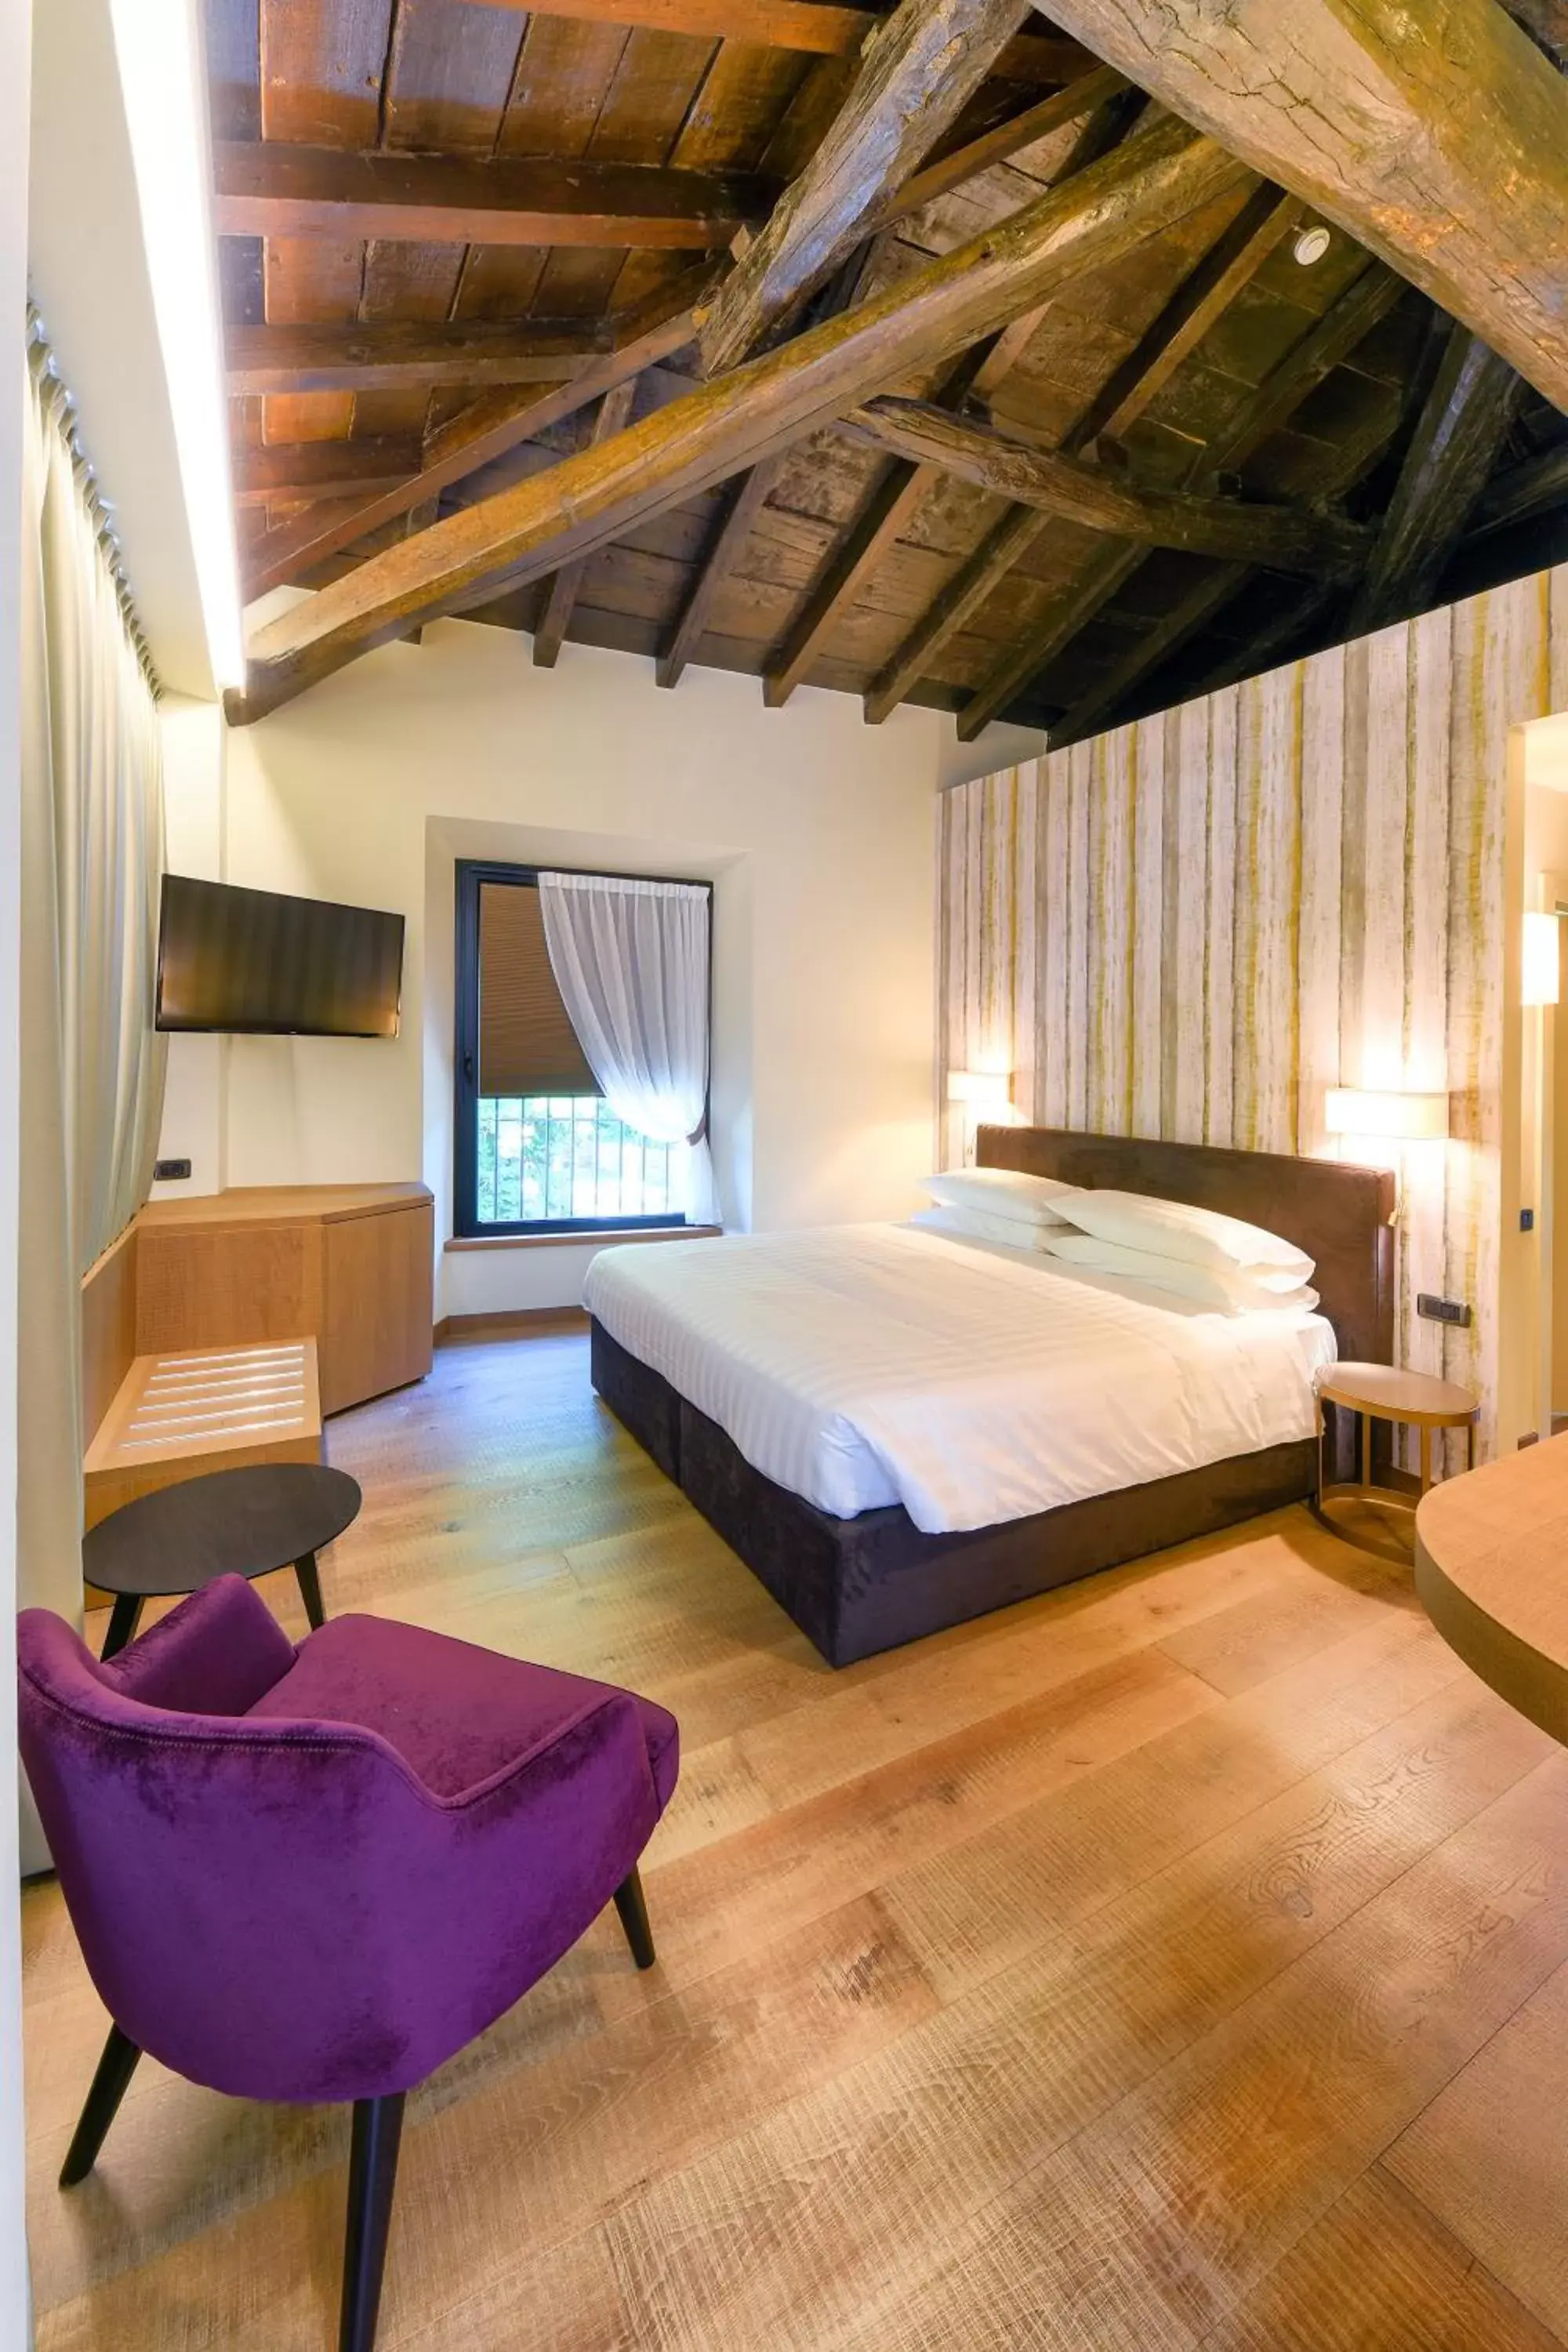 Area and facilities, Bed in Relais Castello Di Casiglio